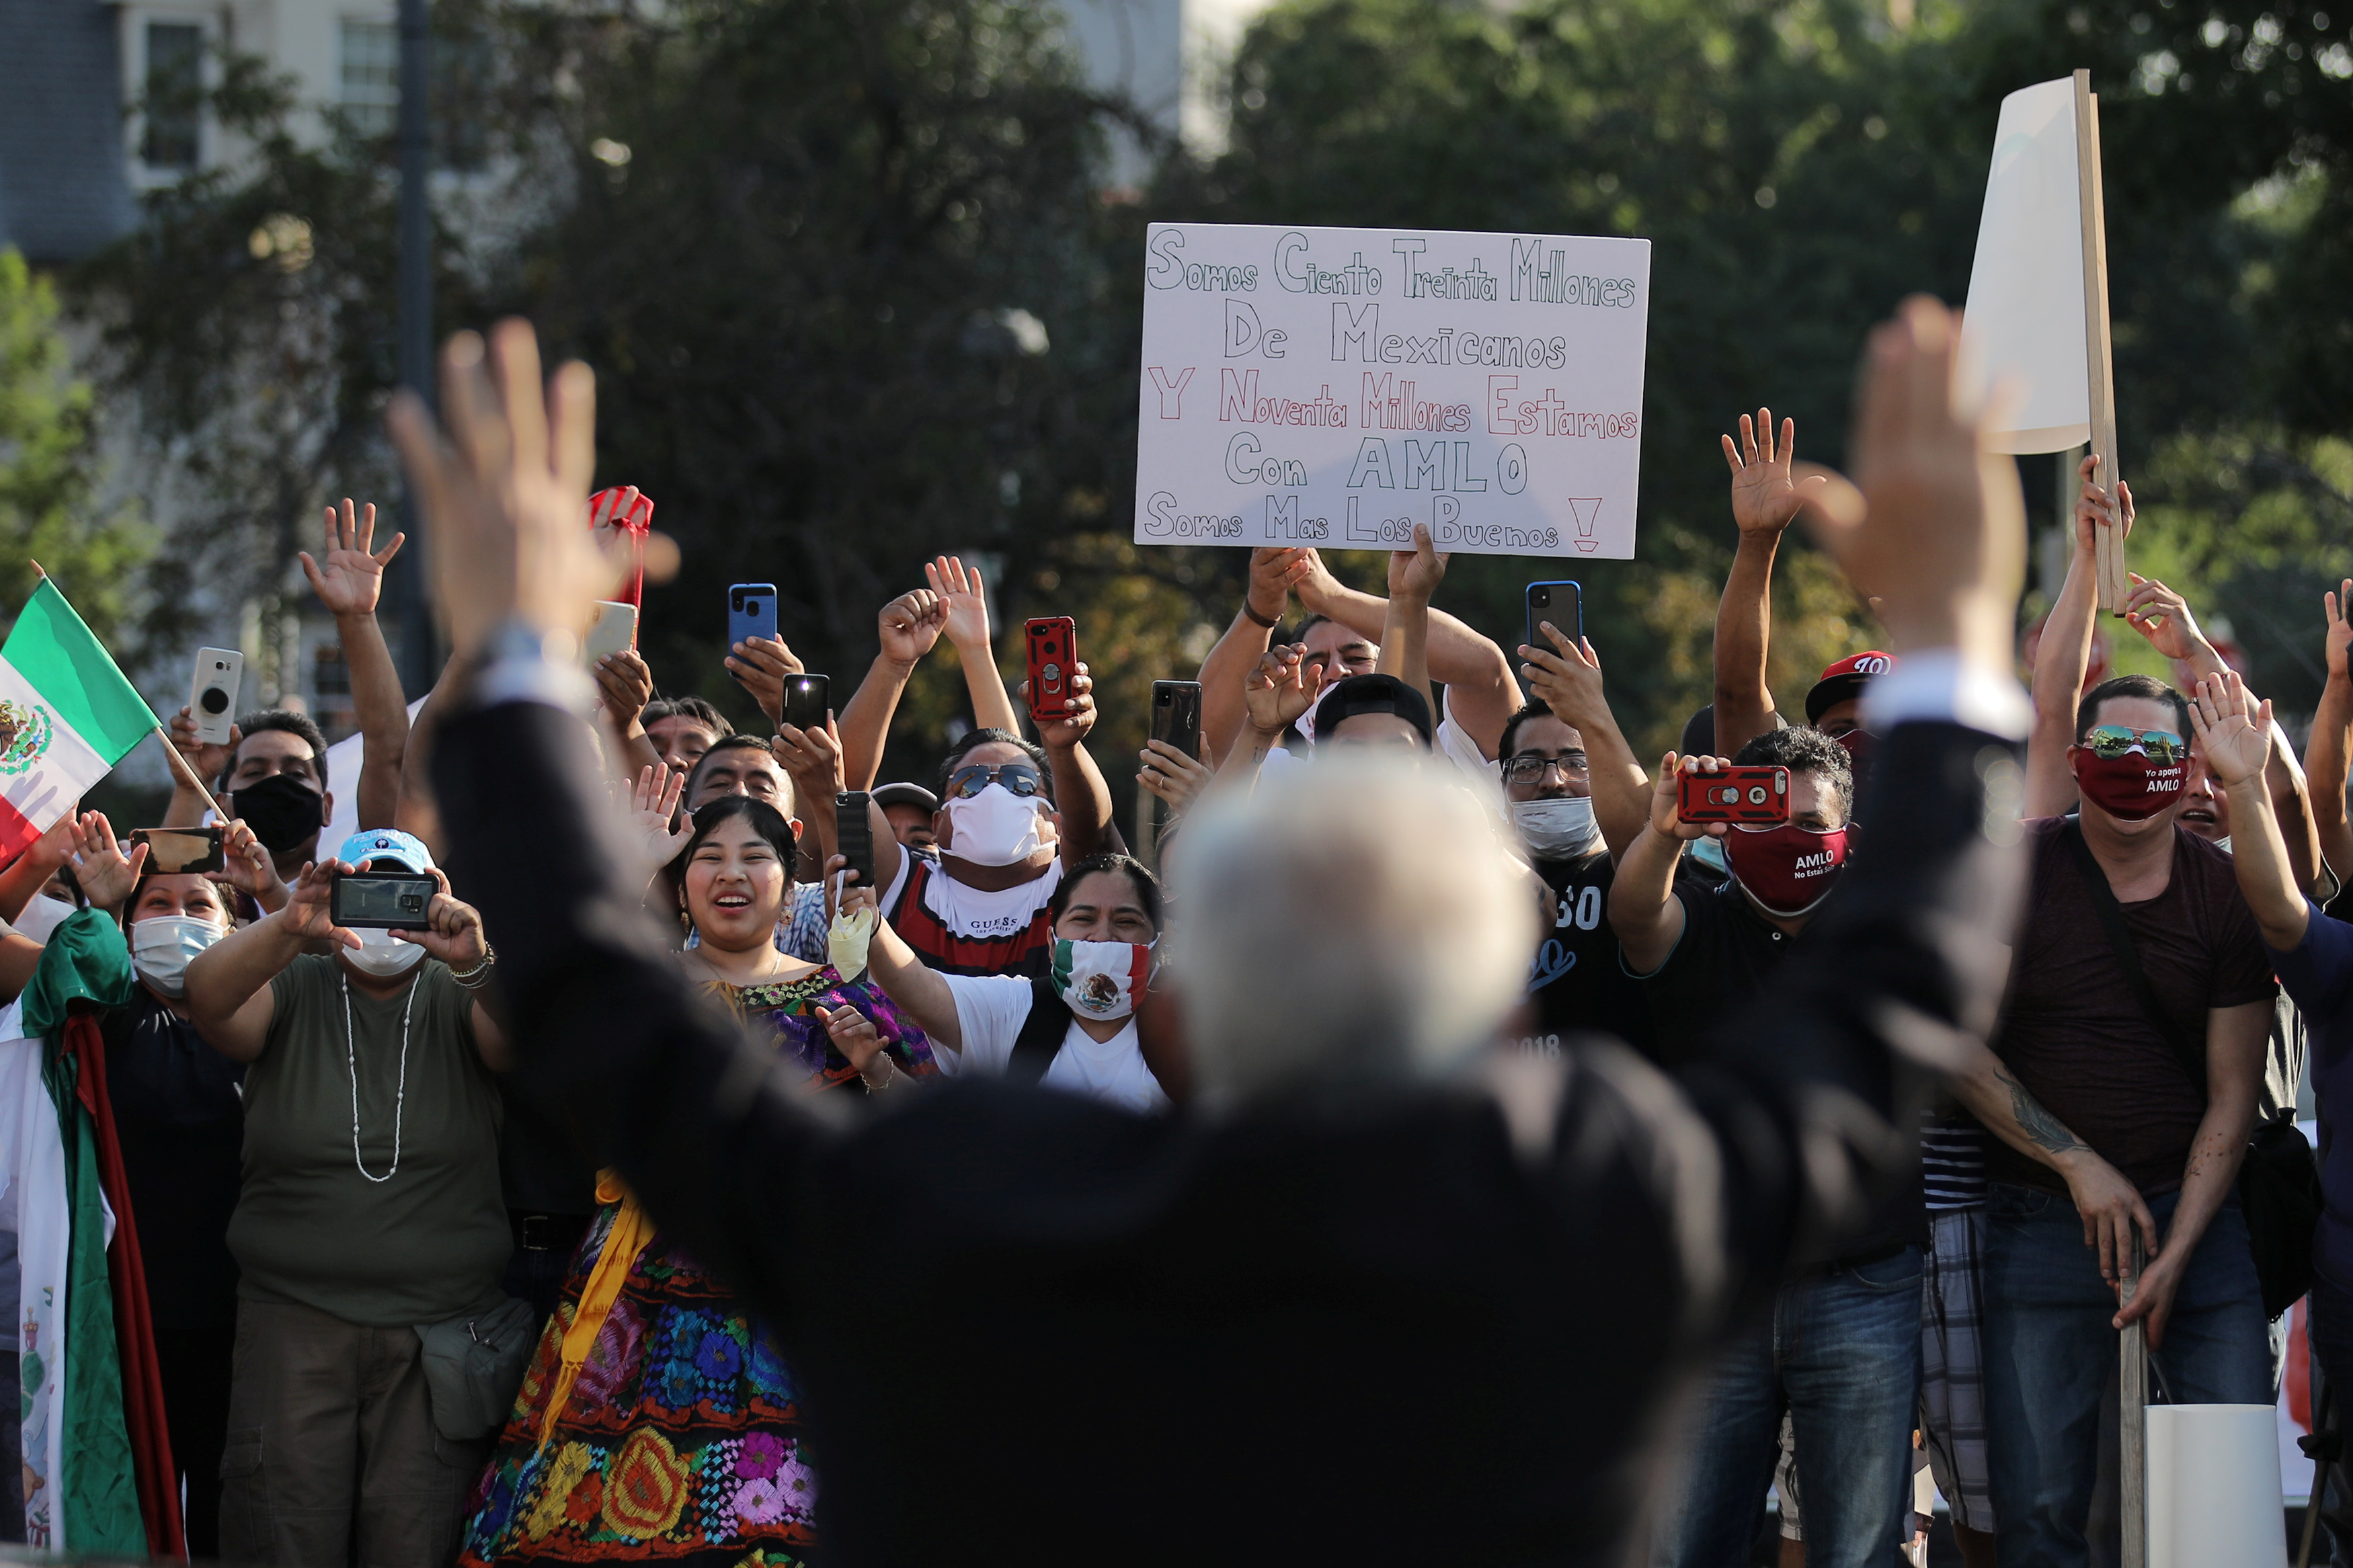 El presidente de México, Andrés Manuel López Obrador, saluda a sus seguidores mientras participa en una ceremonia de colocación de coronas de flores en el monumento conmemorativo de Benito Juárez en el centro de Washington DC, EE. UU., 8 de julio de 2020. Foto: (REUTERS / Carlos Barria)